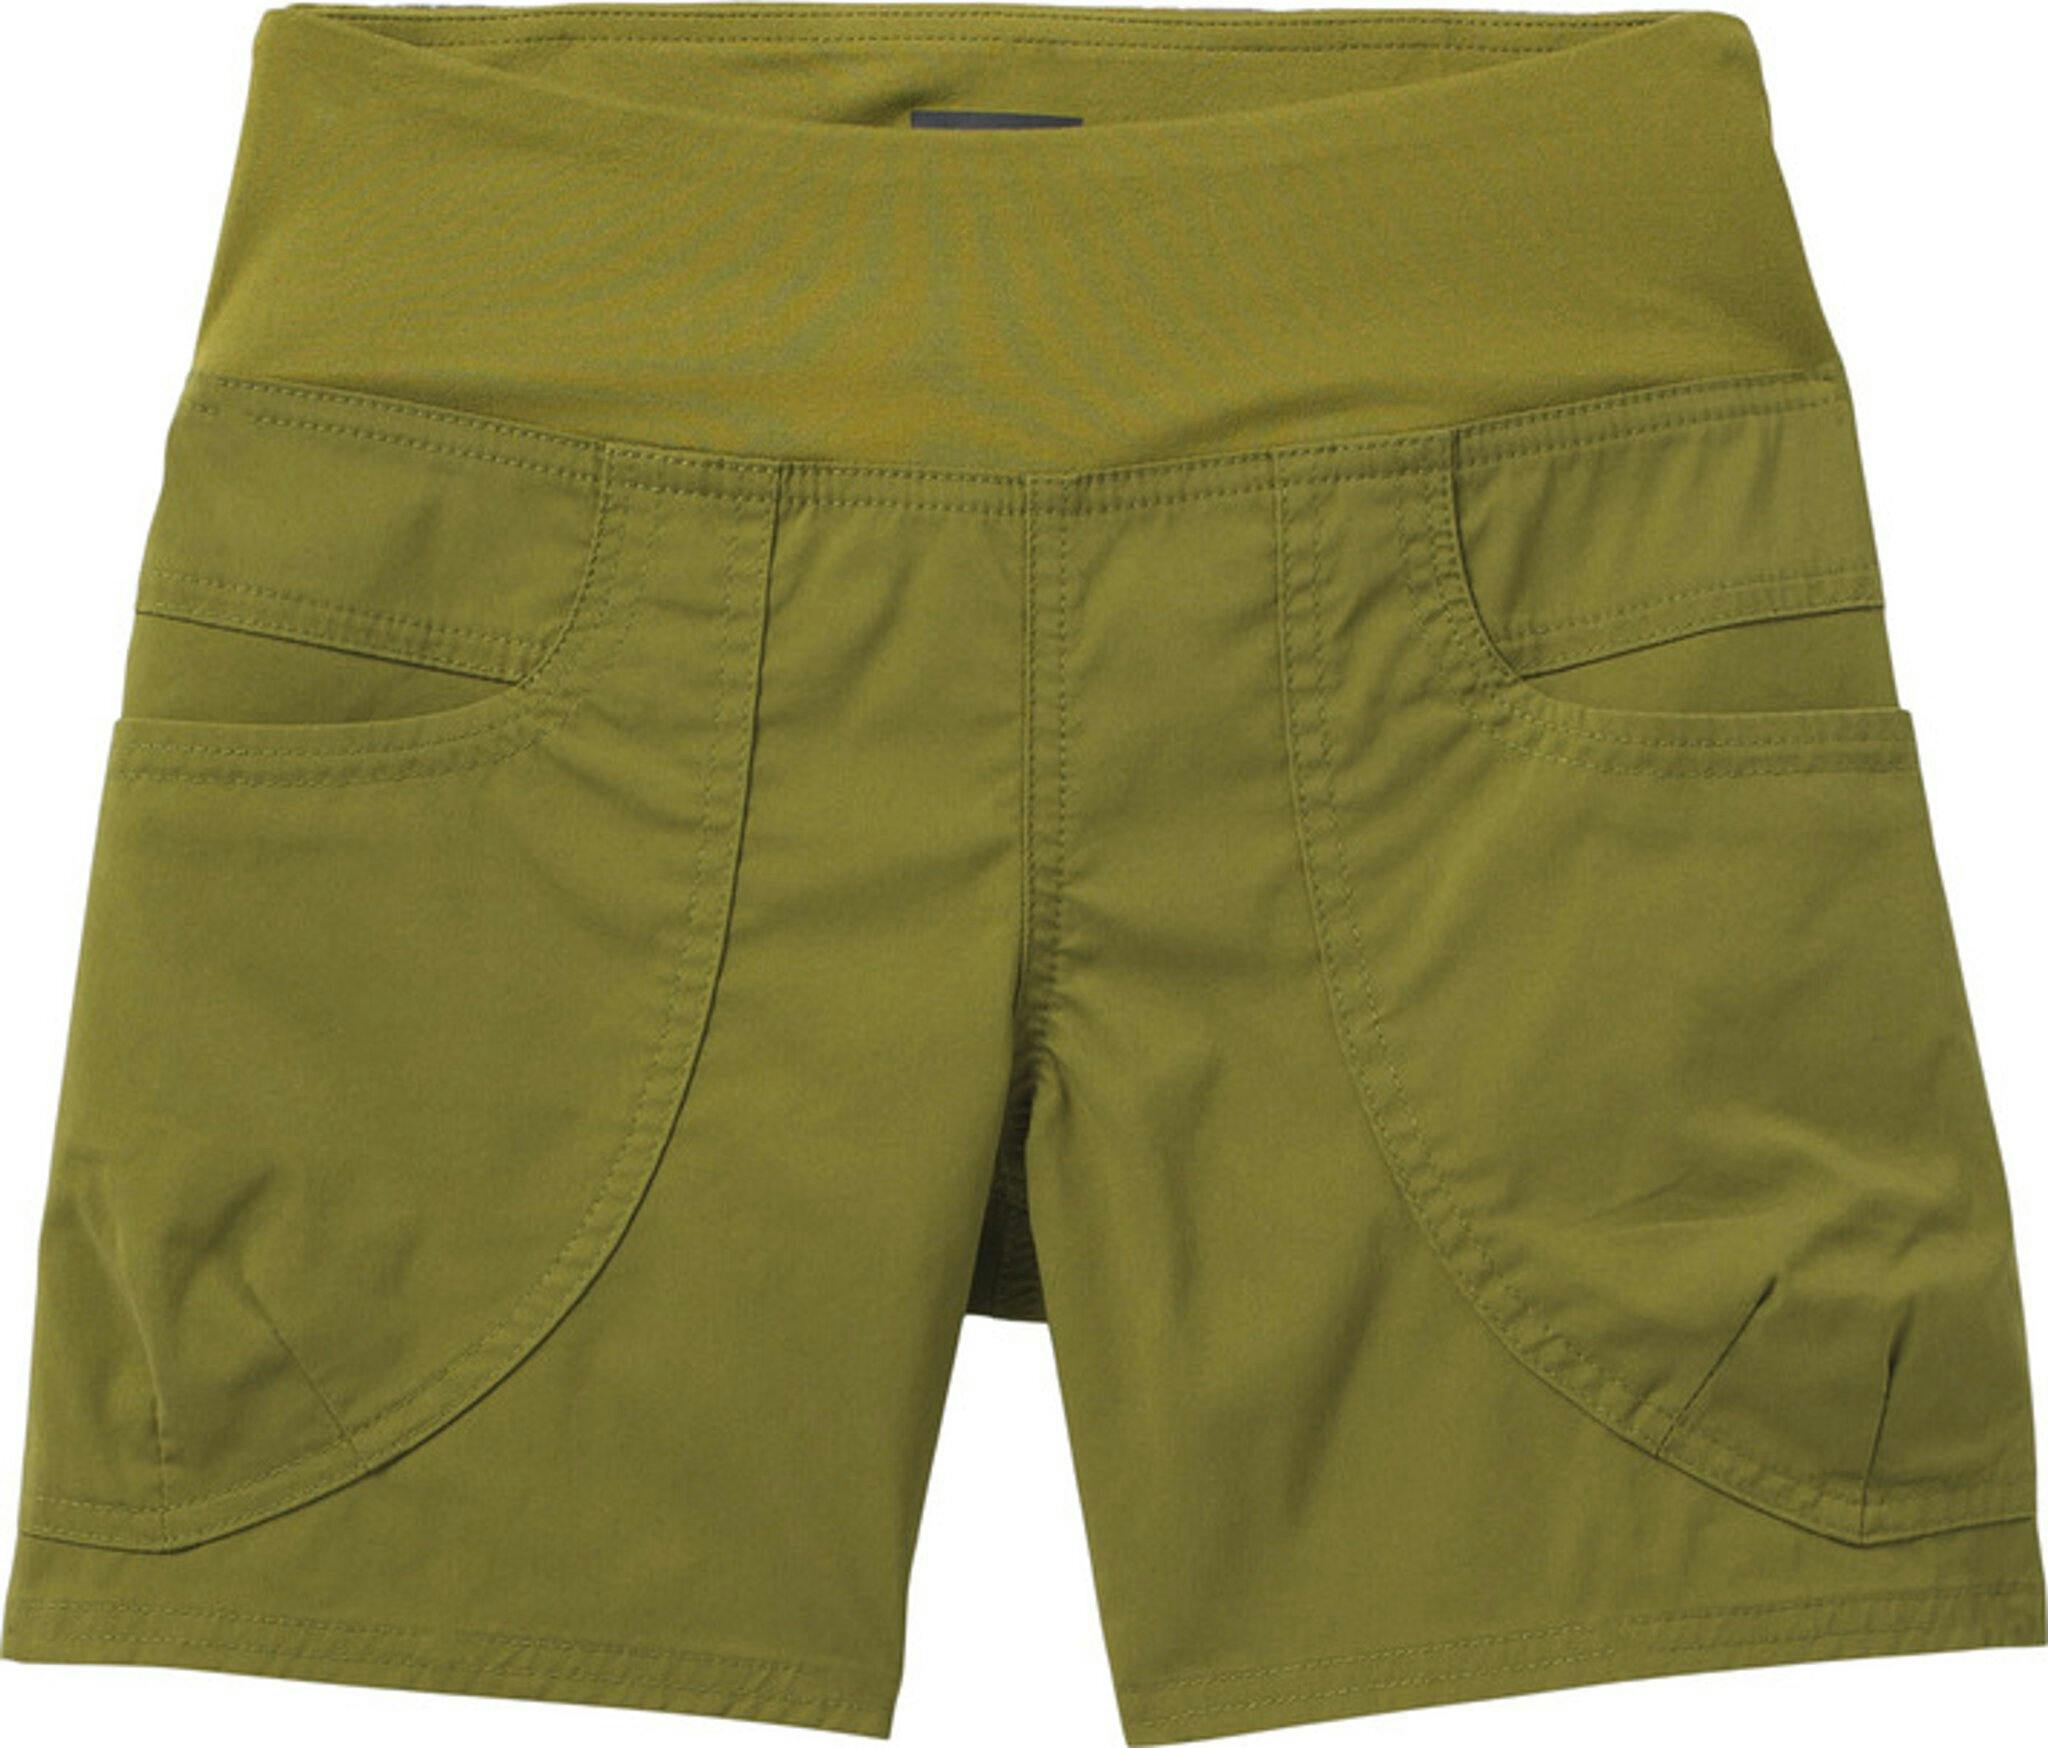 Product image for Kanab Shorts - Women's